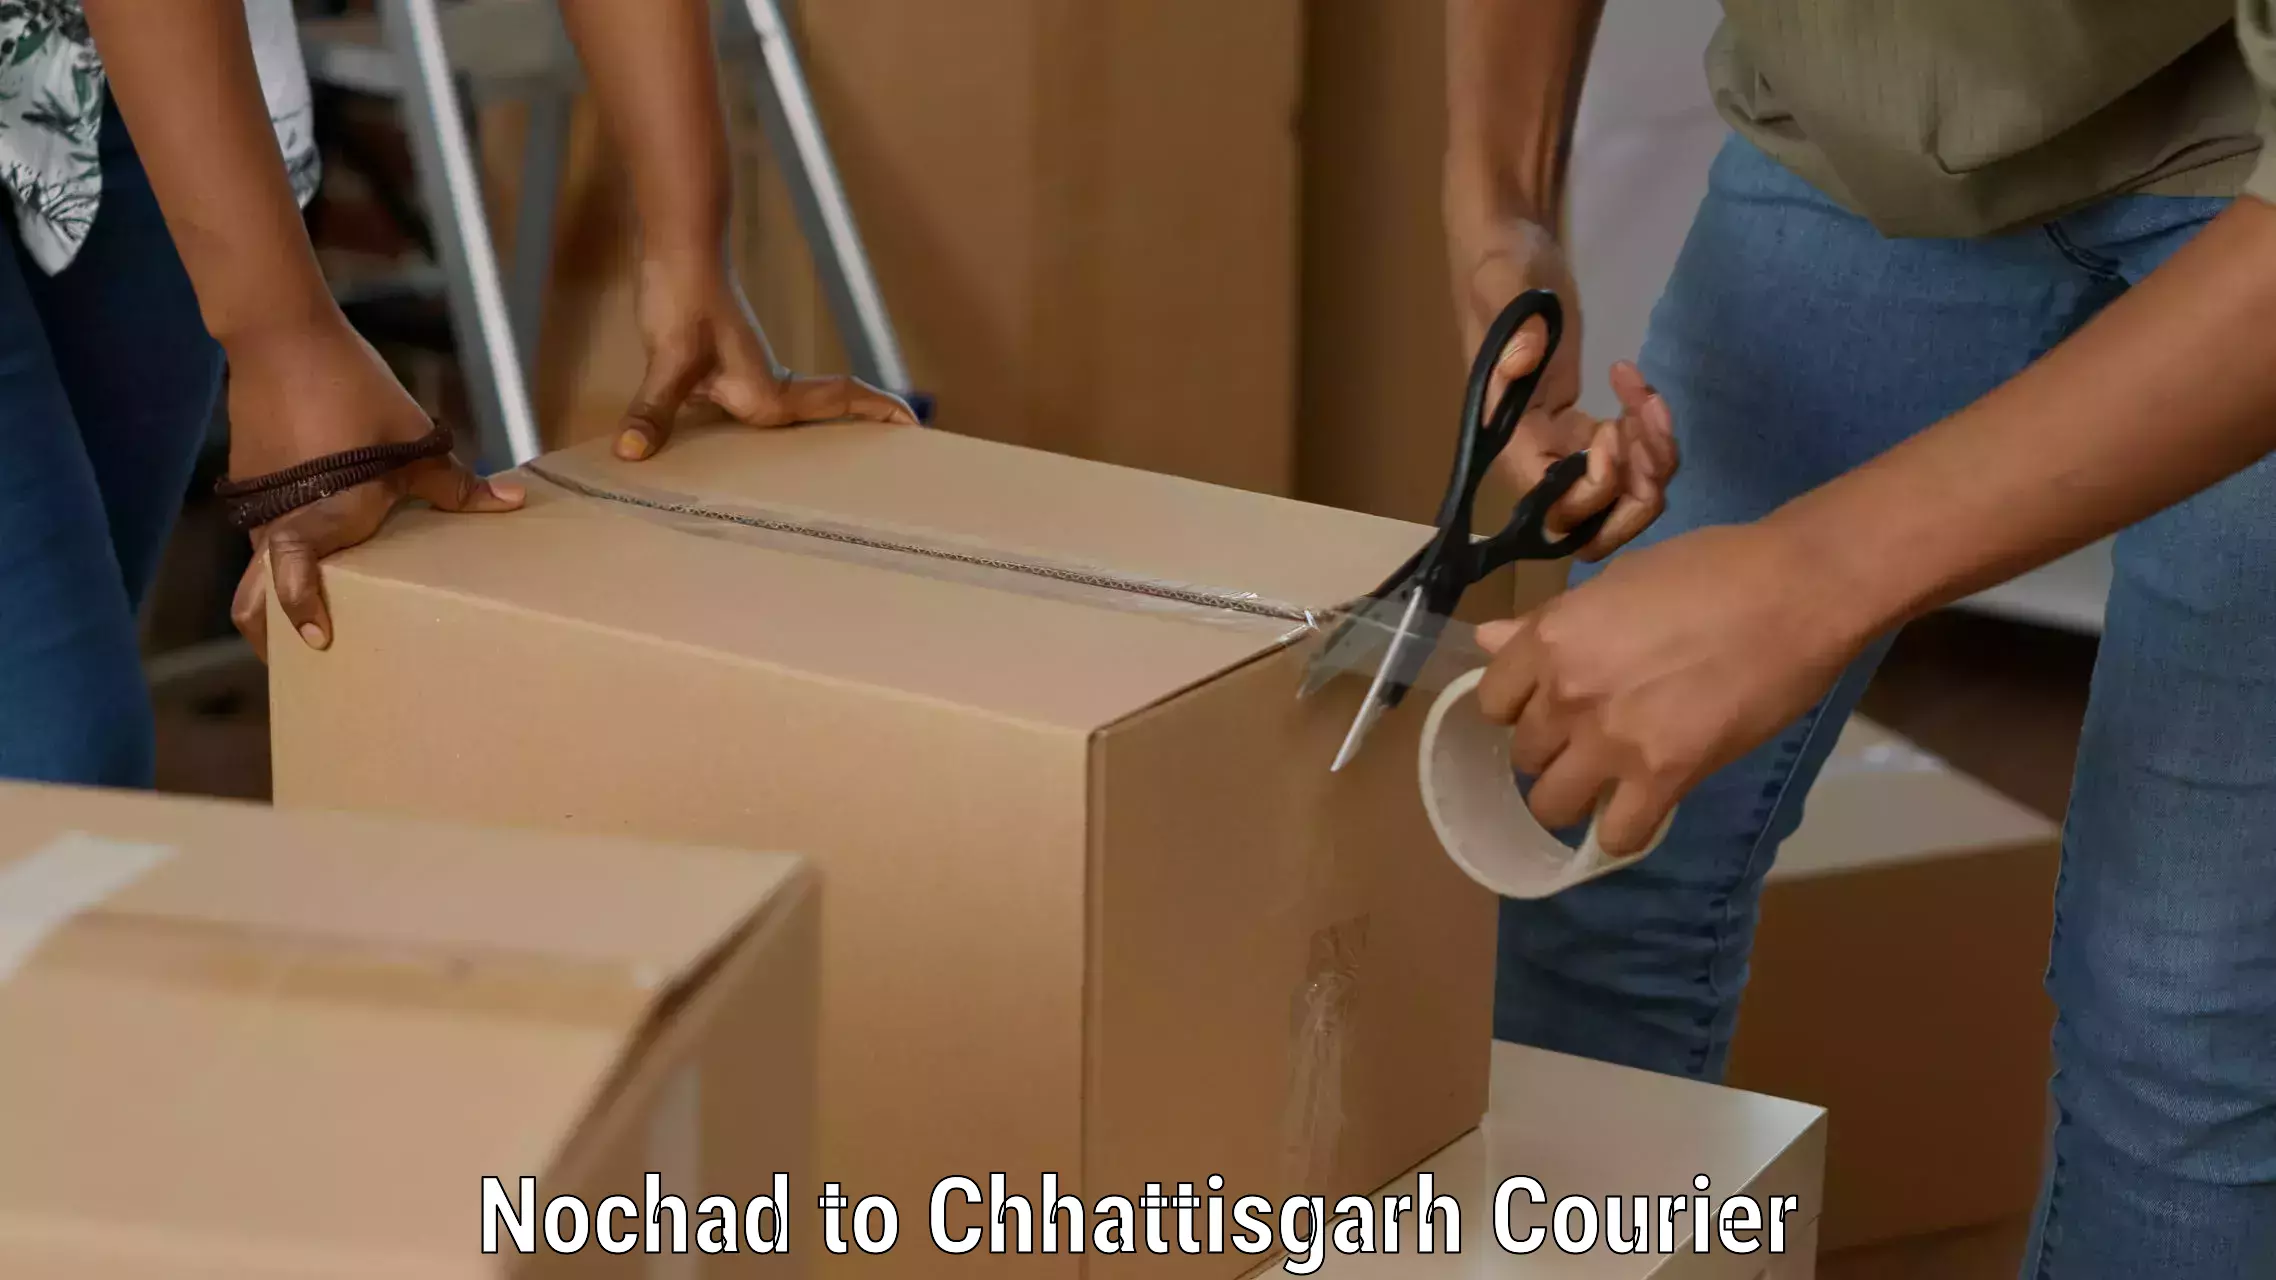 Courier service innovation Nochad to Raigarh Chhattisgarh